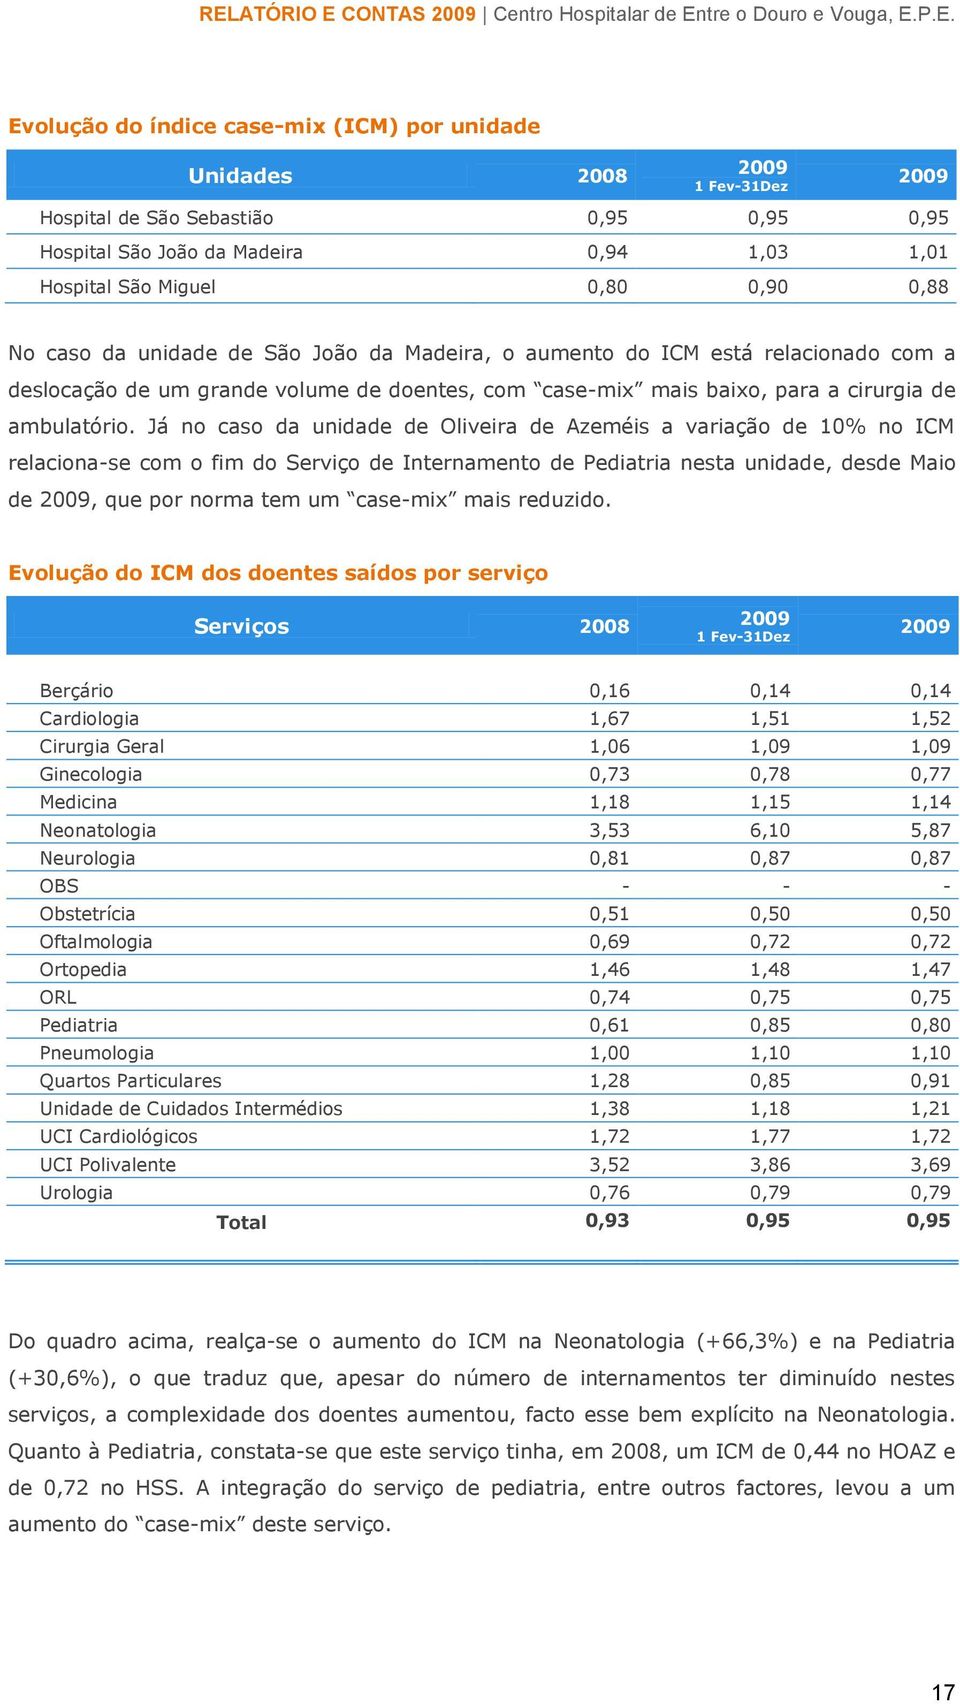 Já no caso da unidade de Oliveira de Azeméis a variação de 10% no ICM relaciona-se com o fim do Serviço de Internamento de Pediatria nesta unidade, desde Maio de 2009, que por norma tem um case-mix